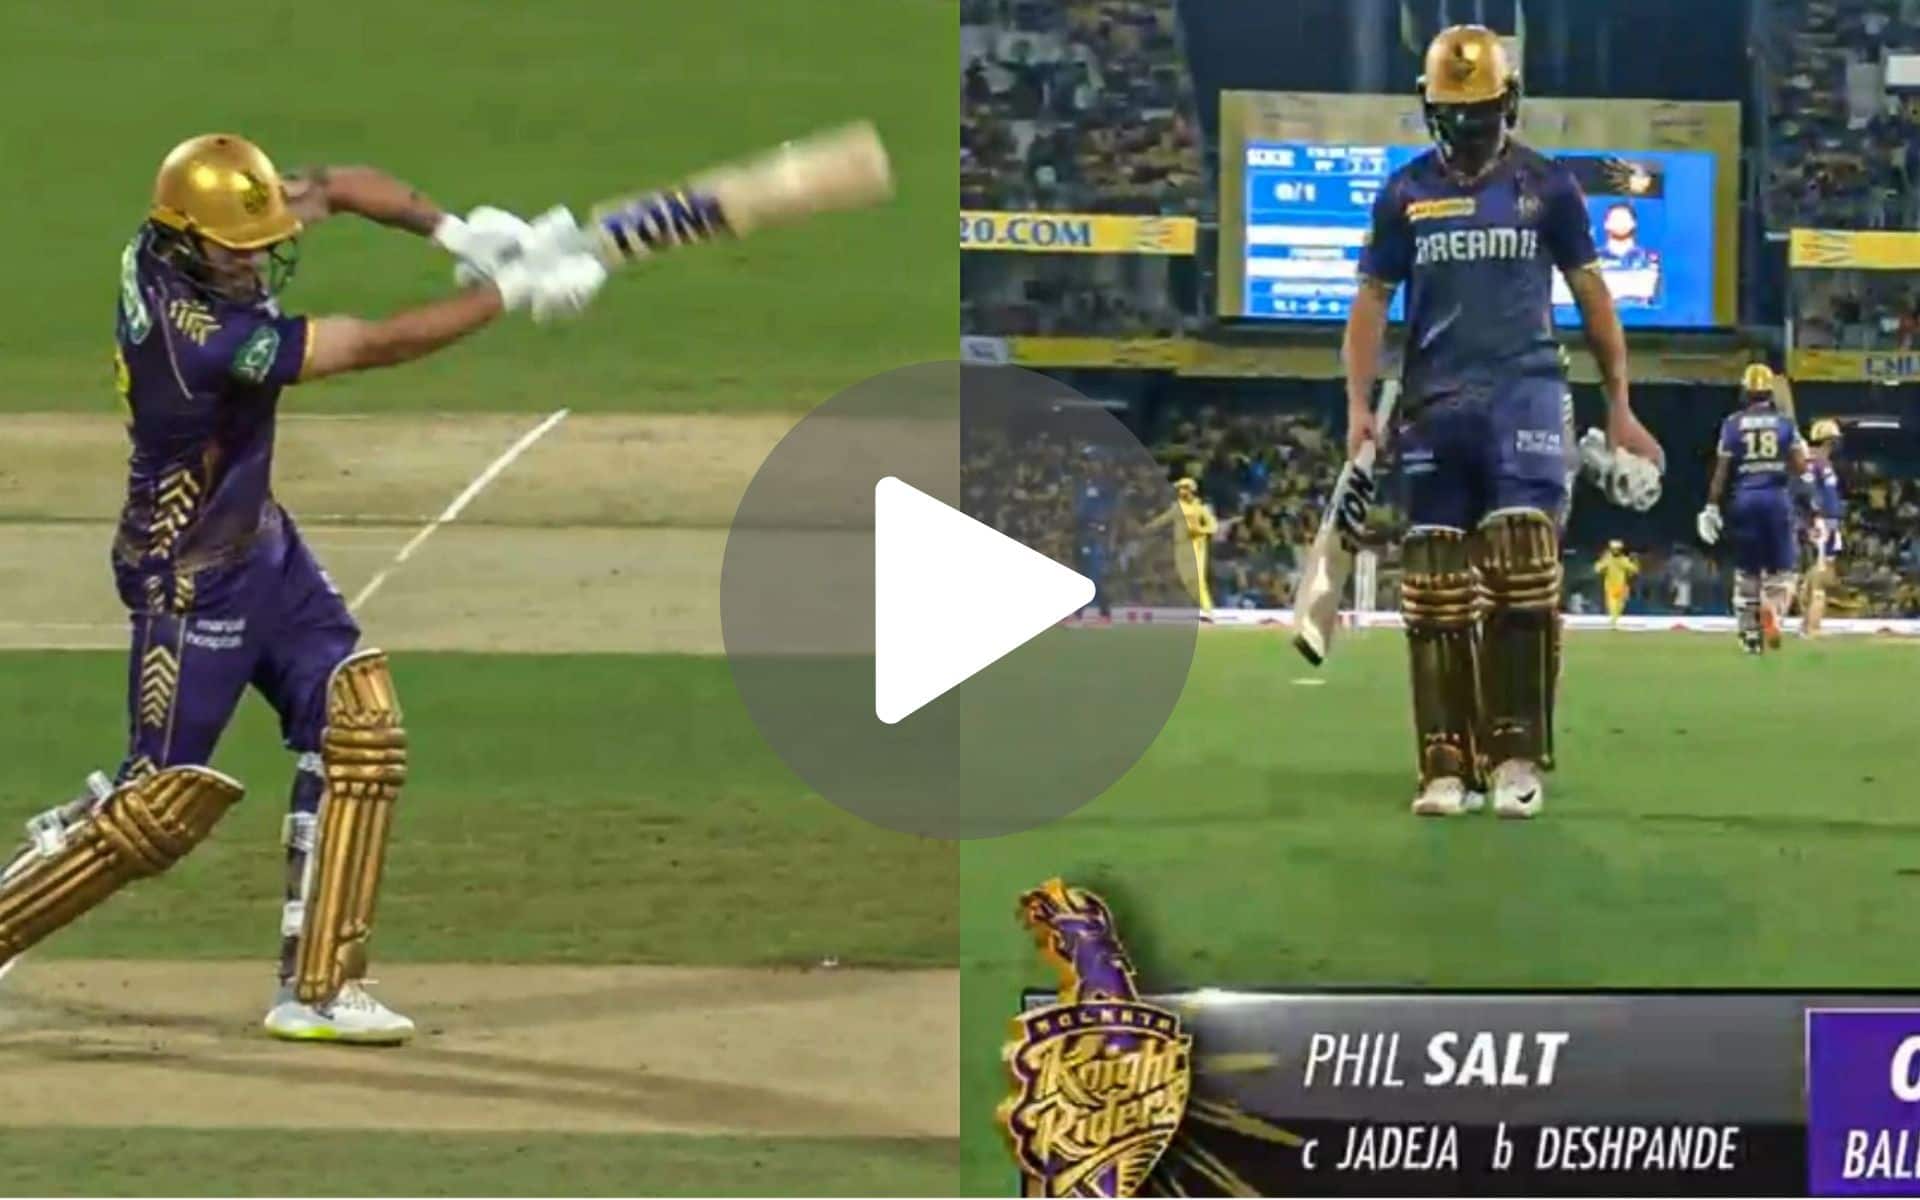 [Watch] Phil Salt Walks Back Empty-Handed As Deshpande-Jadeja Duo Strike Early